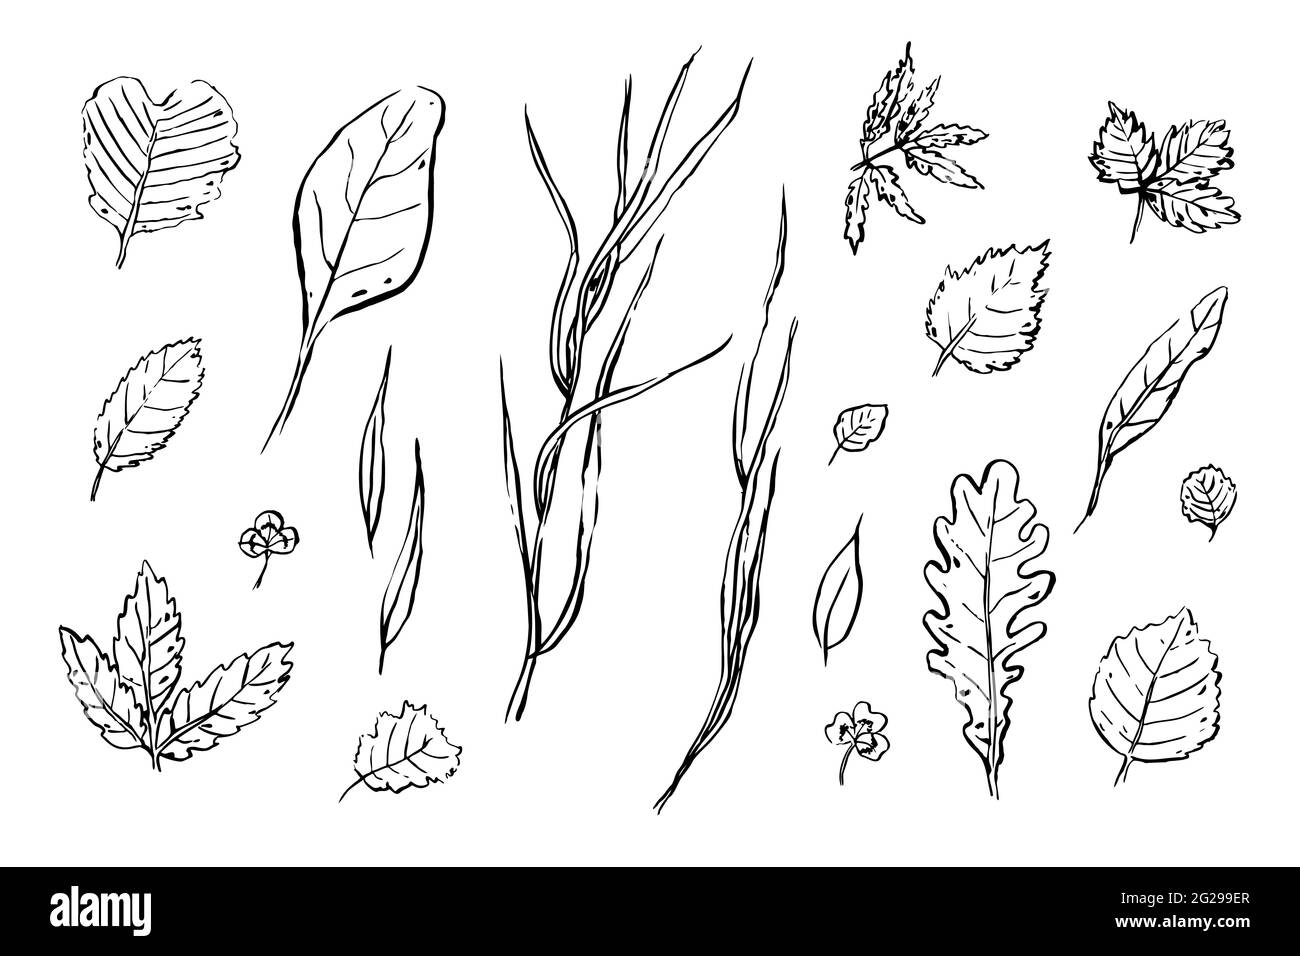 Lässt Skizzen gesetzt. Handgezeichnete Kräuter isoliert auf weißem Hintergrund. Sammlung von Kritzelpflanzen. Natur, Gartenarbeit, Wald, Sommer, Herbstschilder. Blatt von Stock Vektor